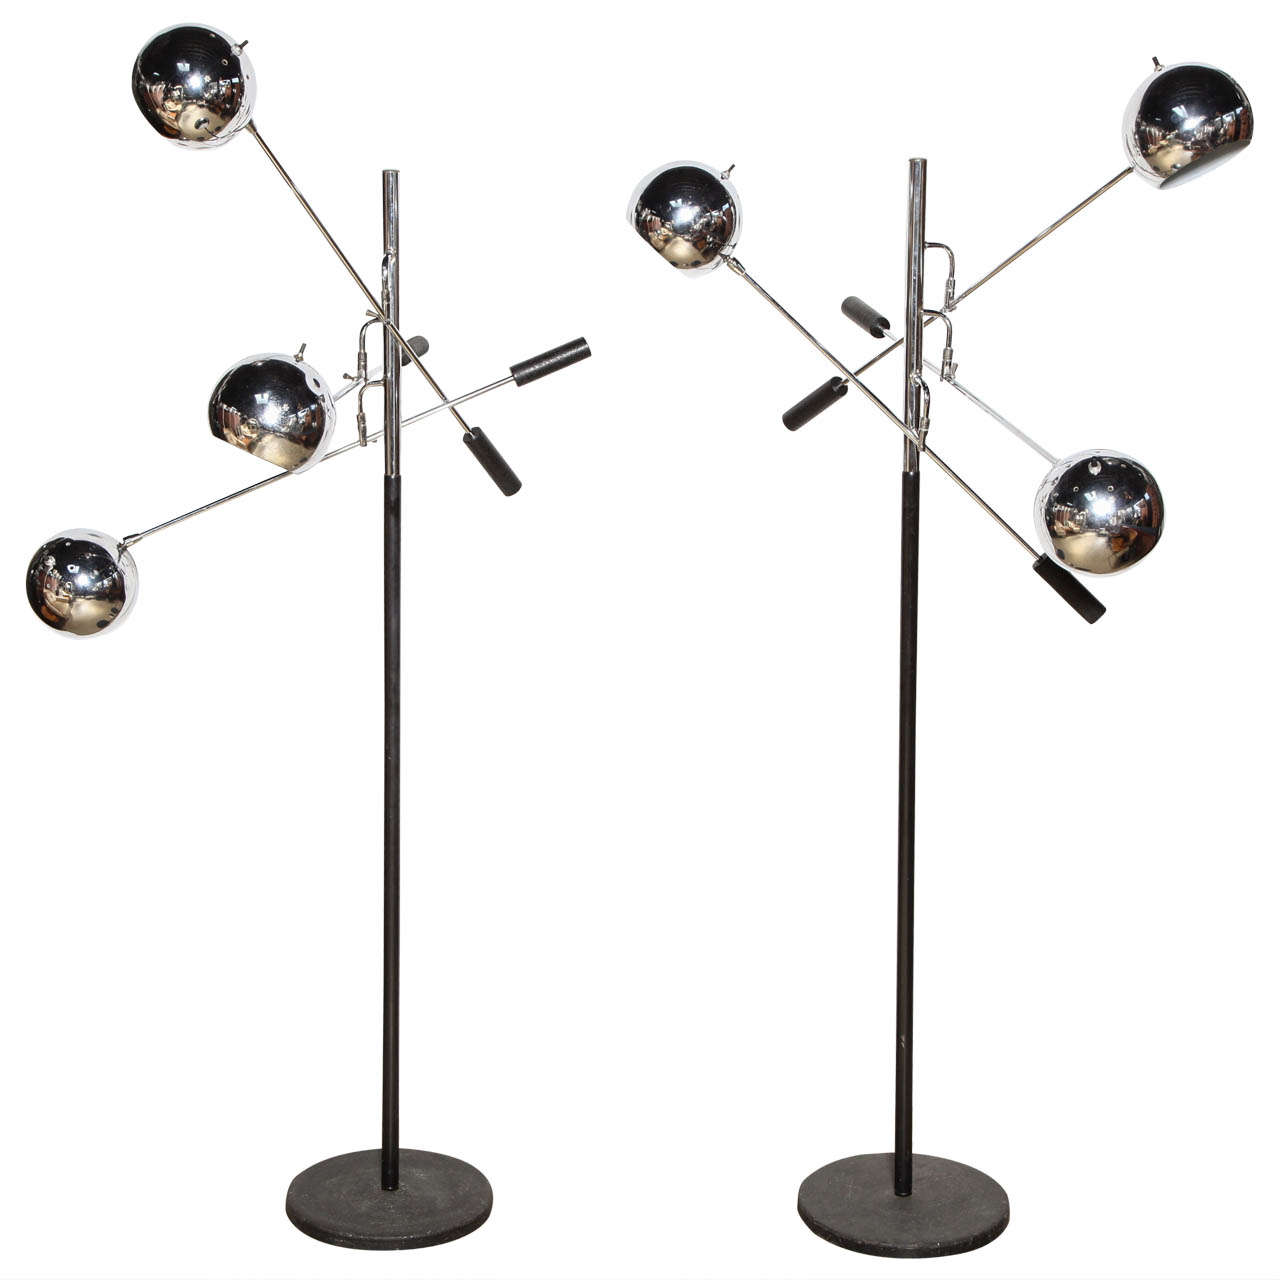 pair of Robert Sonneman "Orbiter" Floor Lamps